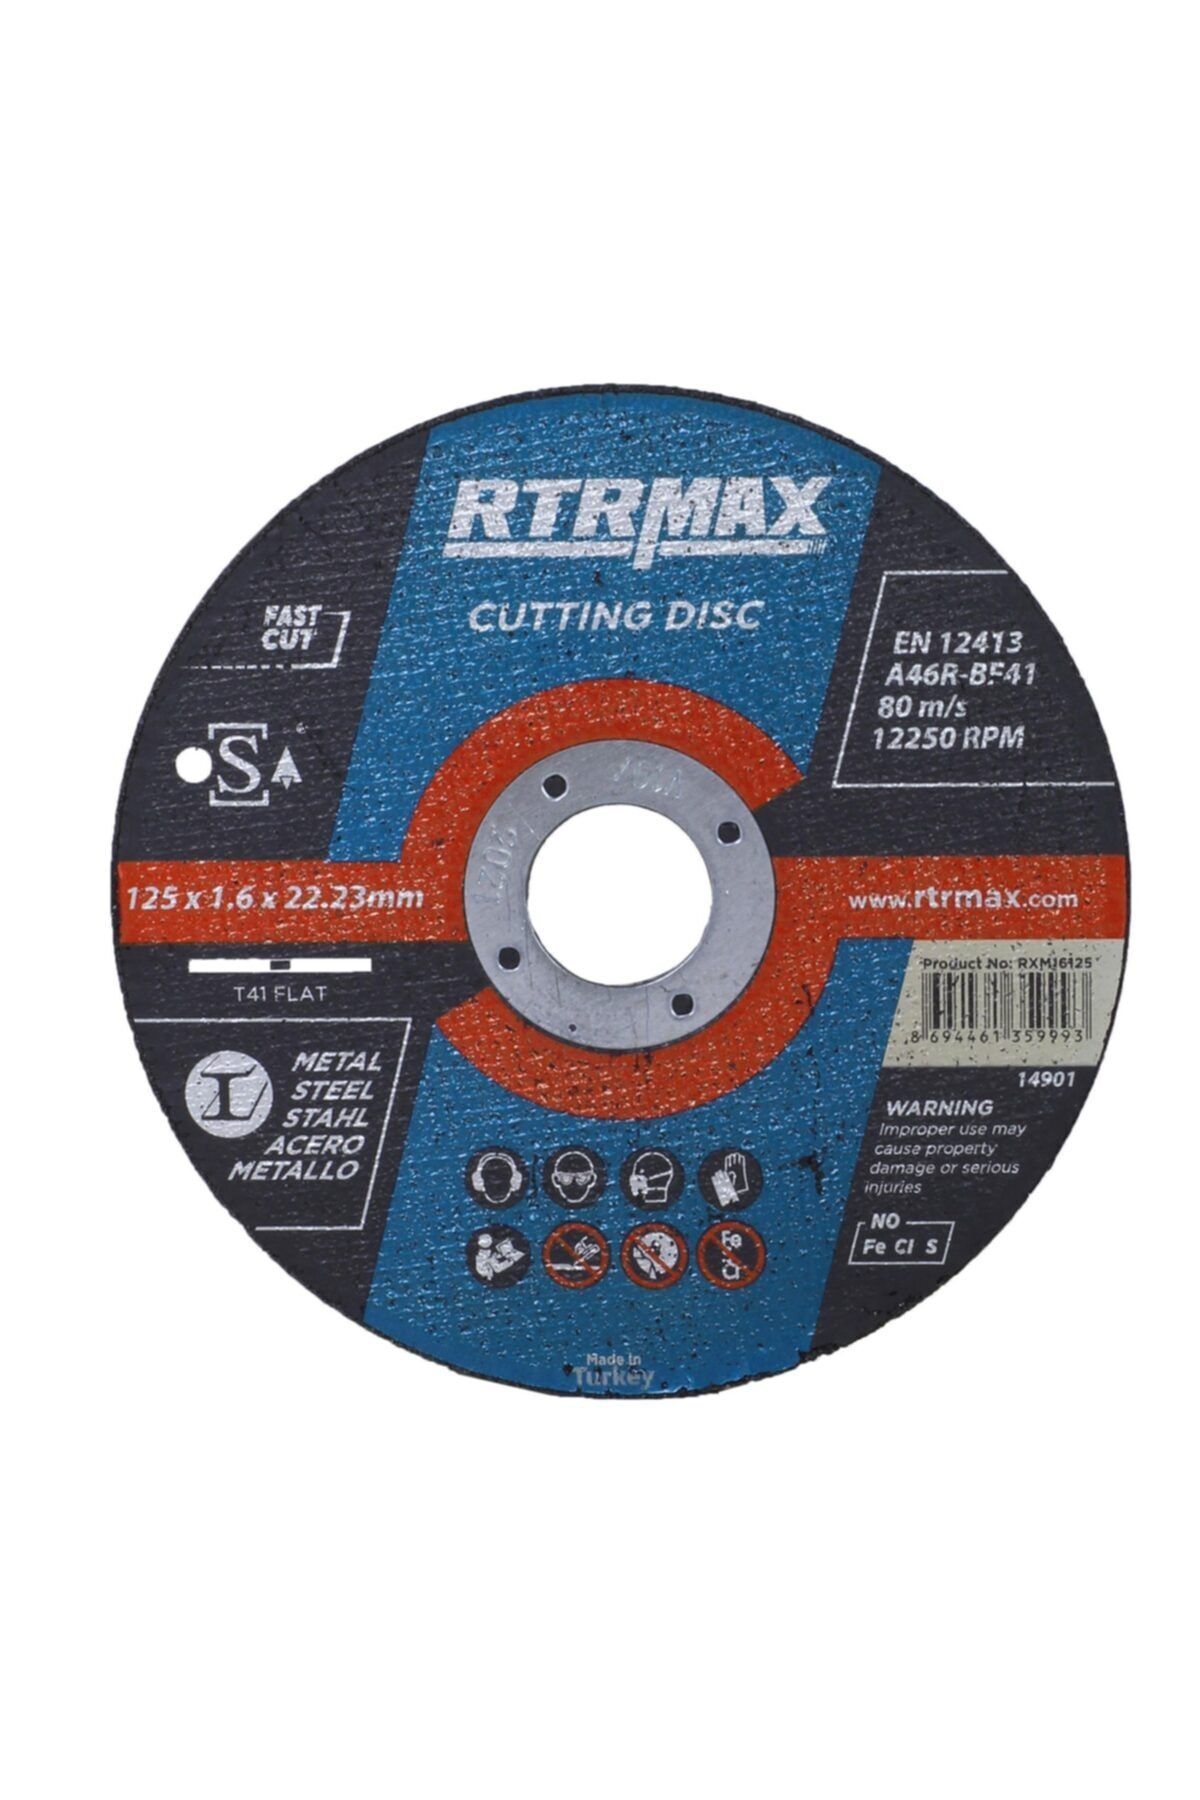 Rtrmax Metal Kesici Taş Disk 125x1.6x22.23 Mm